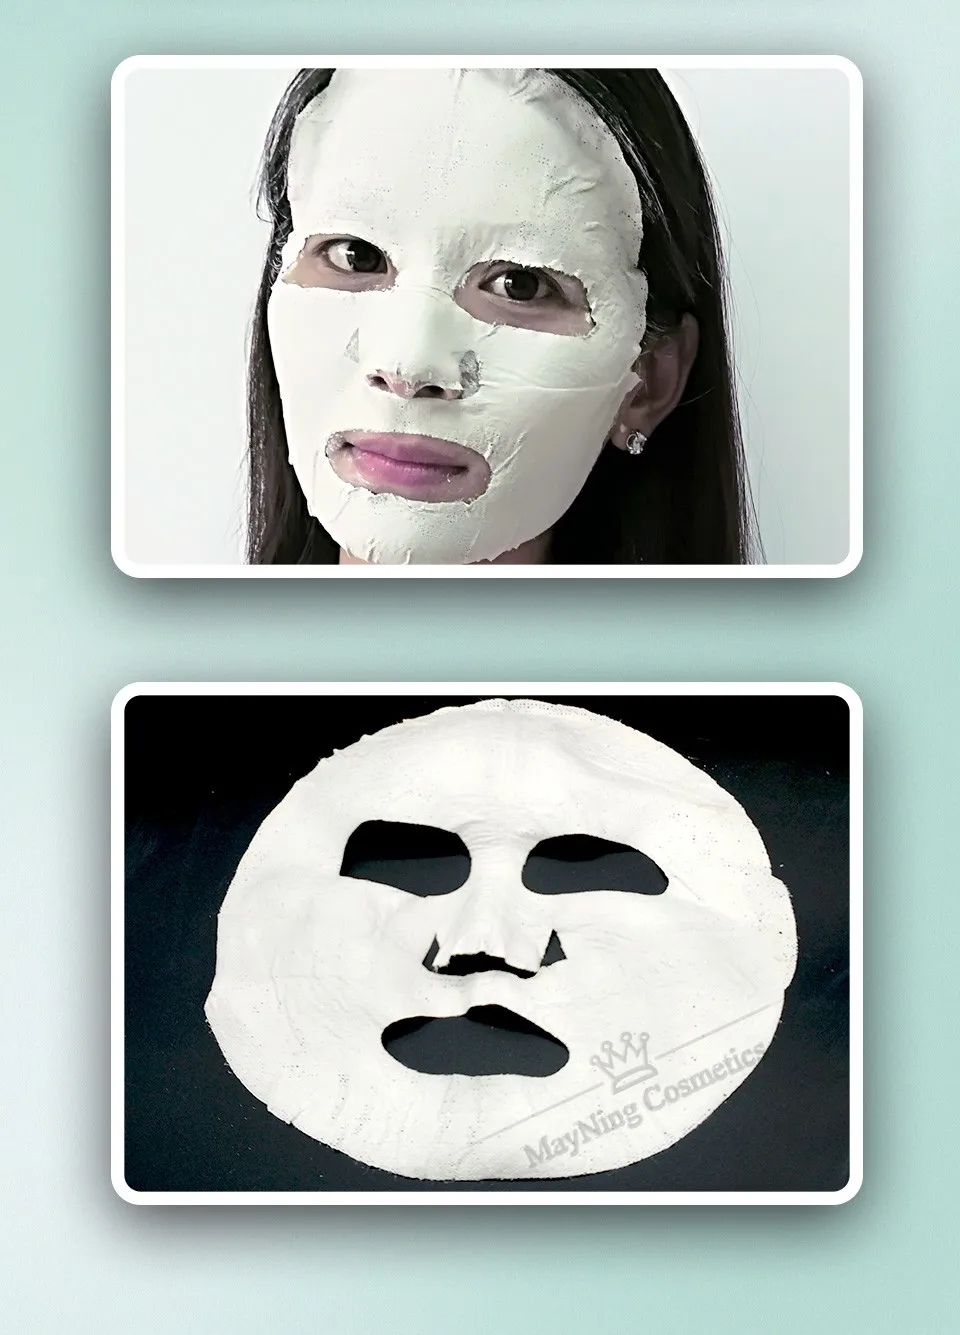 Грязевая маска лист глубокой очистки лица лечения для всех типов кожи, включая чувствительную кожу очищающий, укрепляющий, минимизации